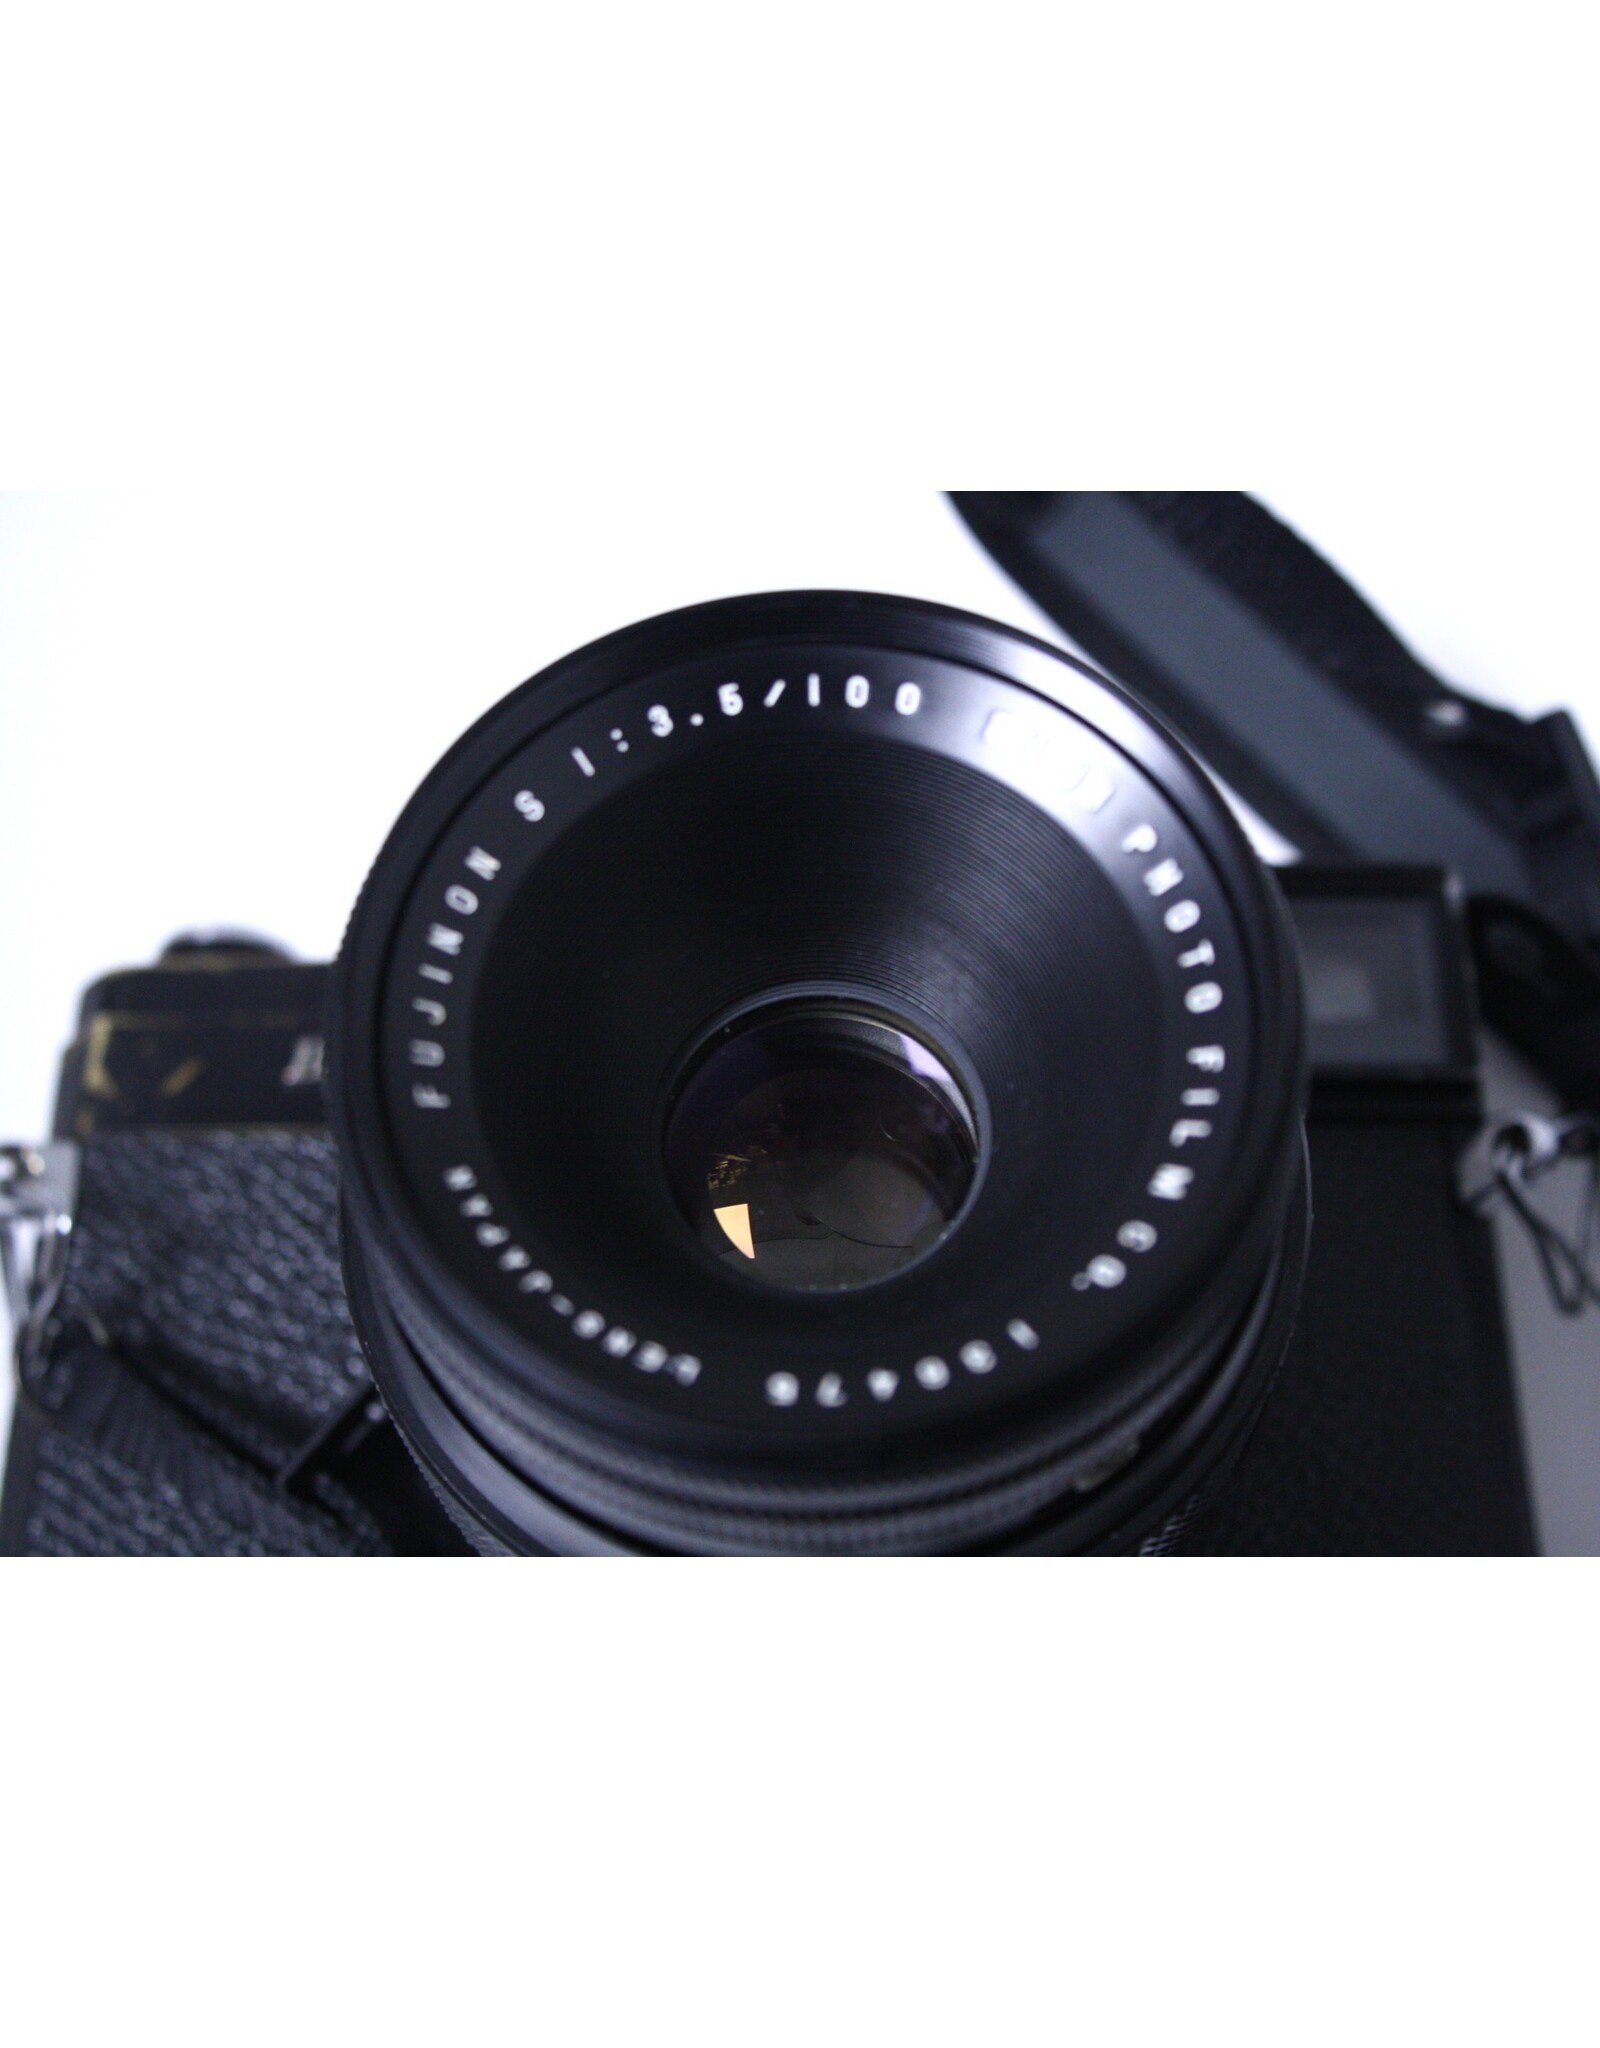 カメラfujica gl690 fujinon 100 3.5